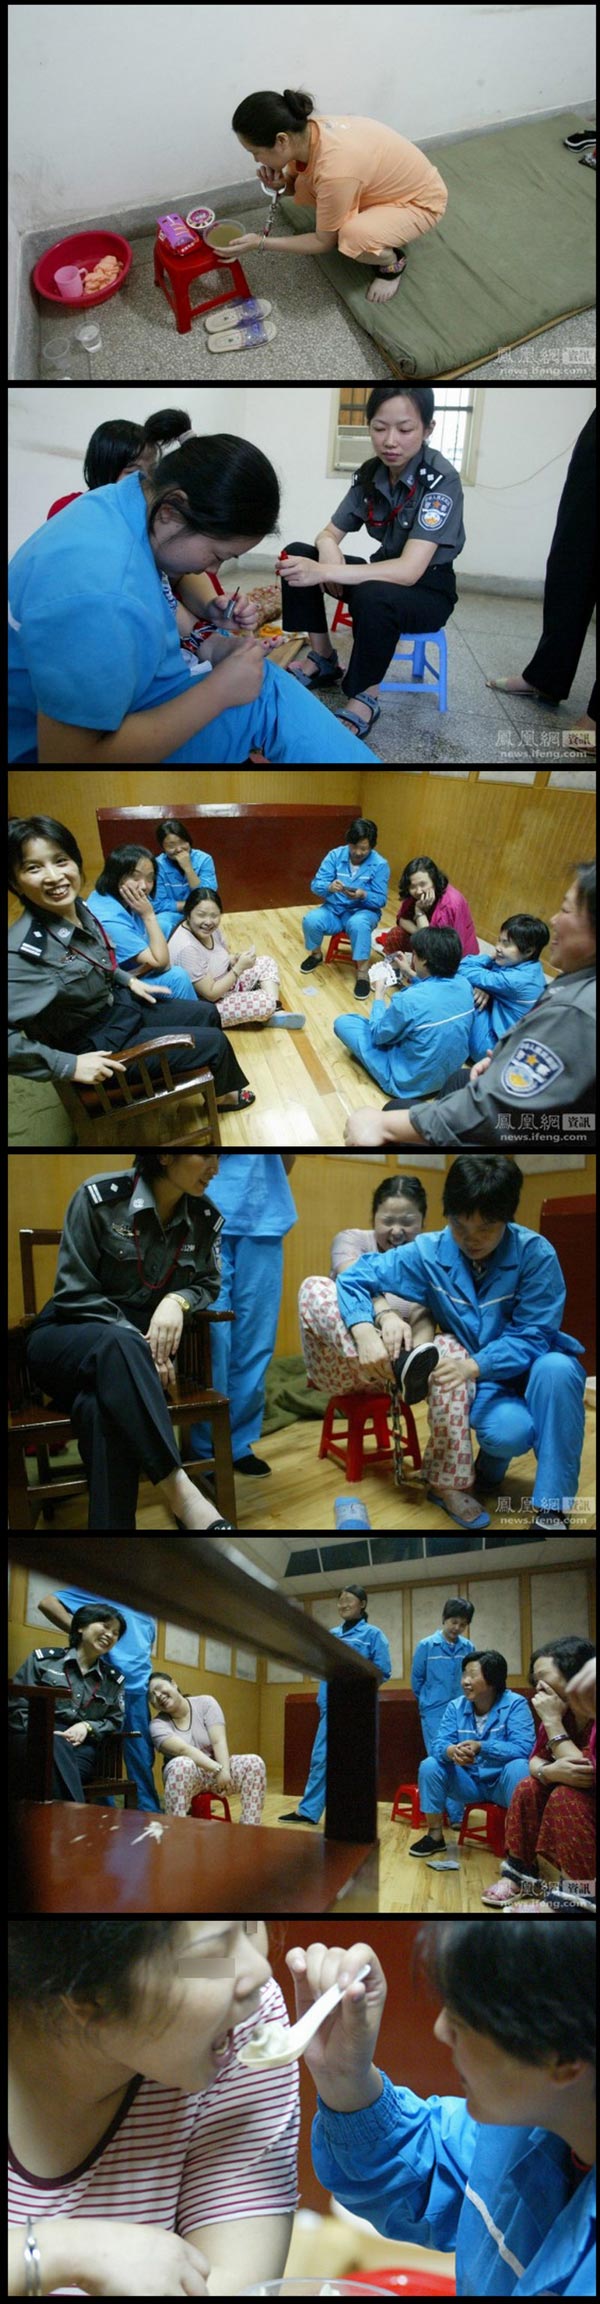 Blog Serius: Serius Sadis - Gambar Banduan Akhir China 12 Jam Sebelum